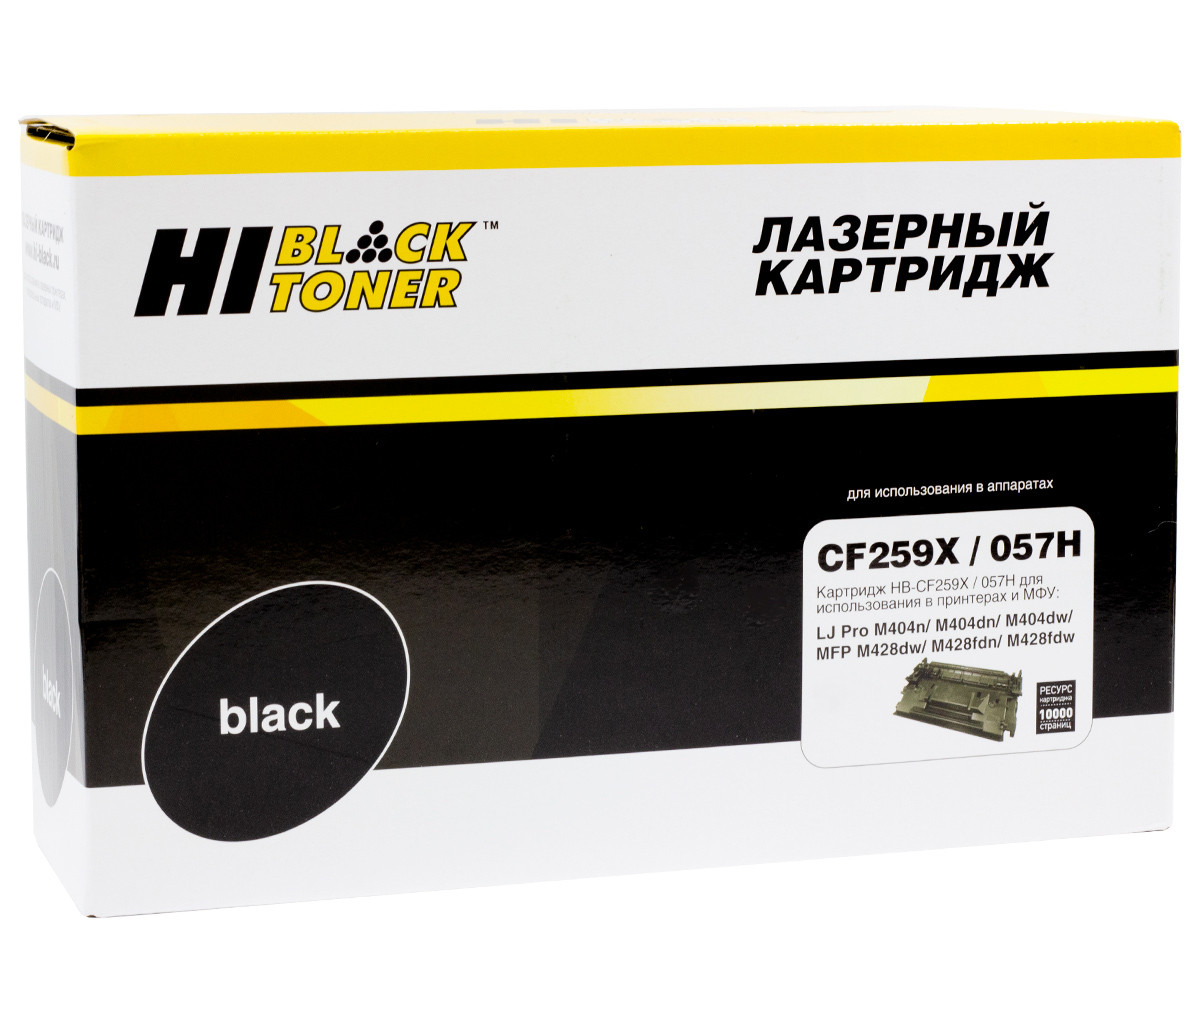 Картридж 59X/ CF259X (для HP LaserJet M406/ M430/ Pro M304/ Pro M404/ Pro M428) Hi-Black